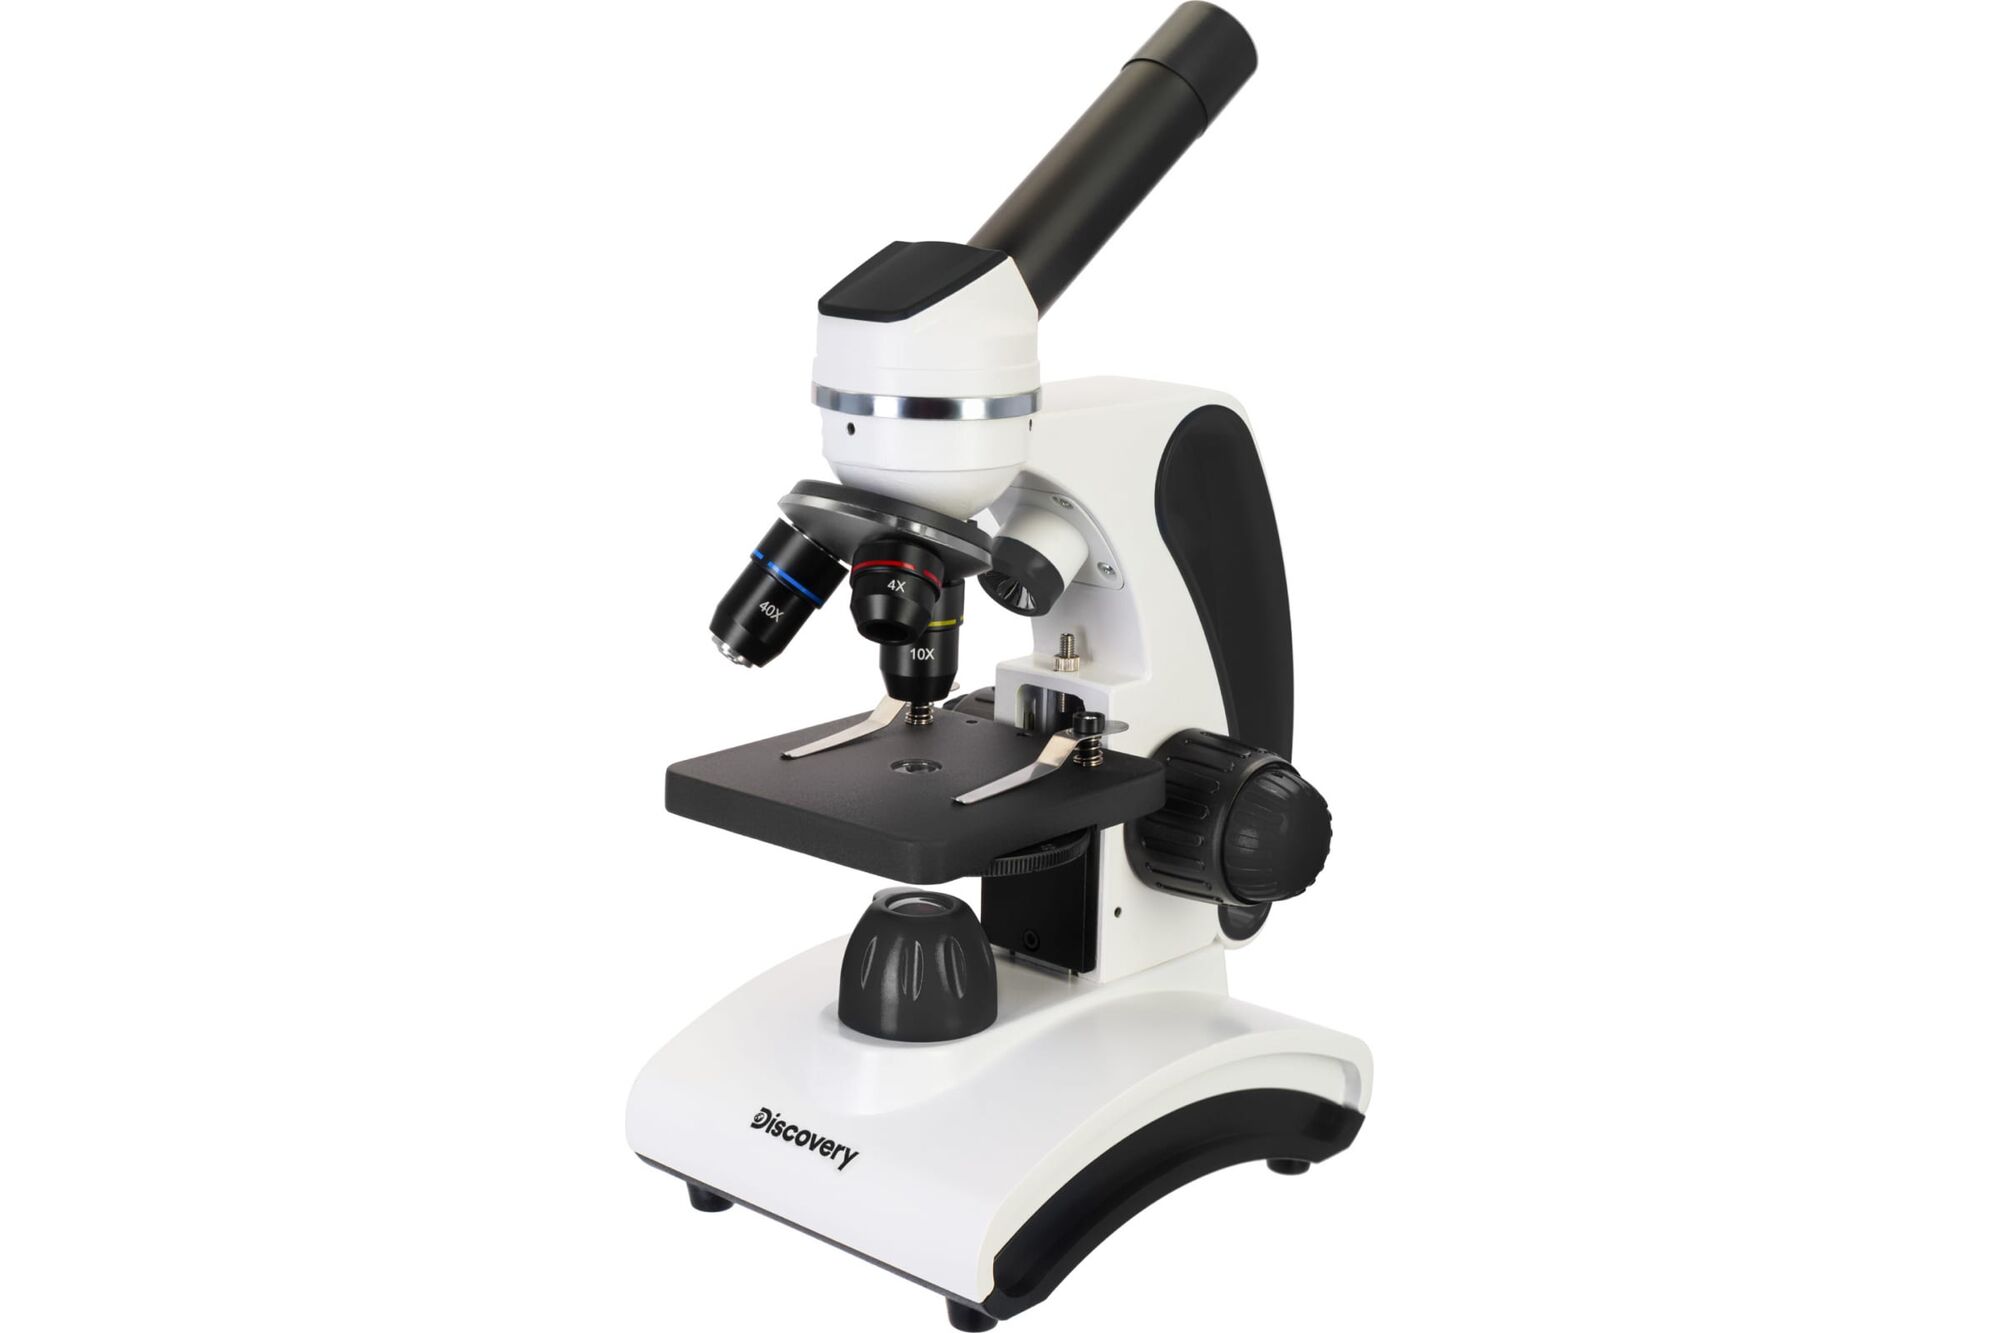 Микроскоп Discovery Pico Polar с книгой 77977